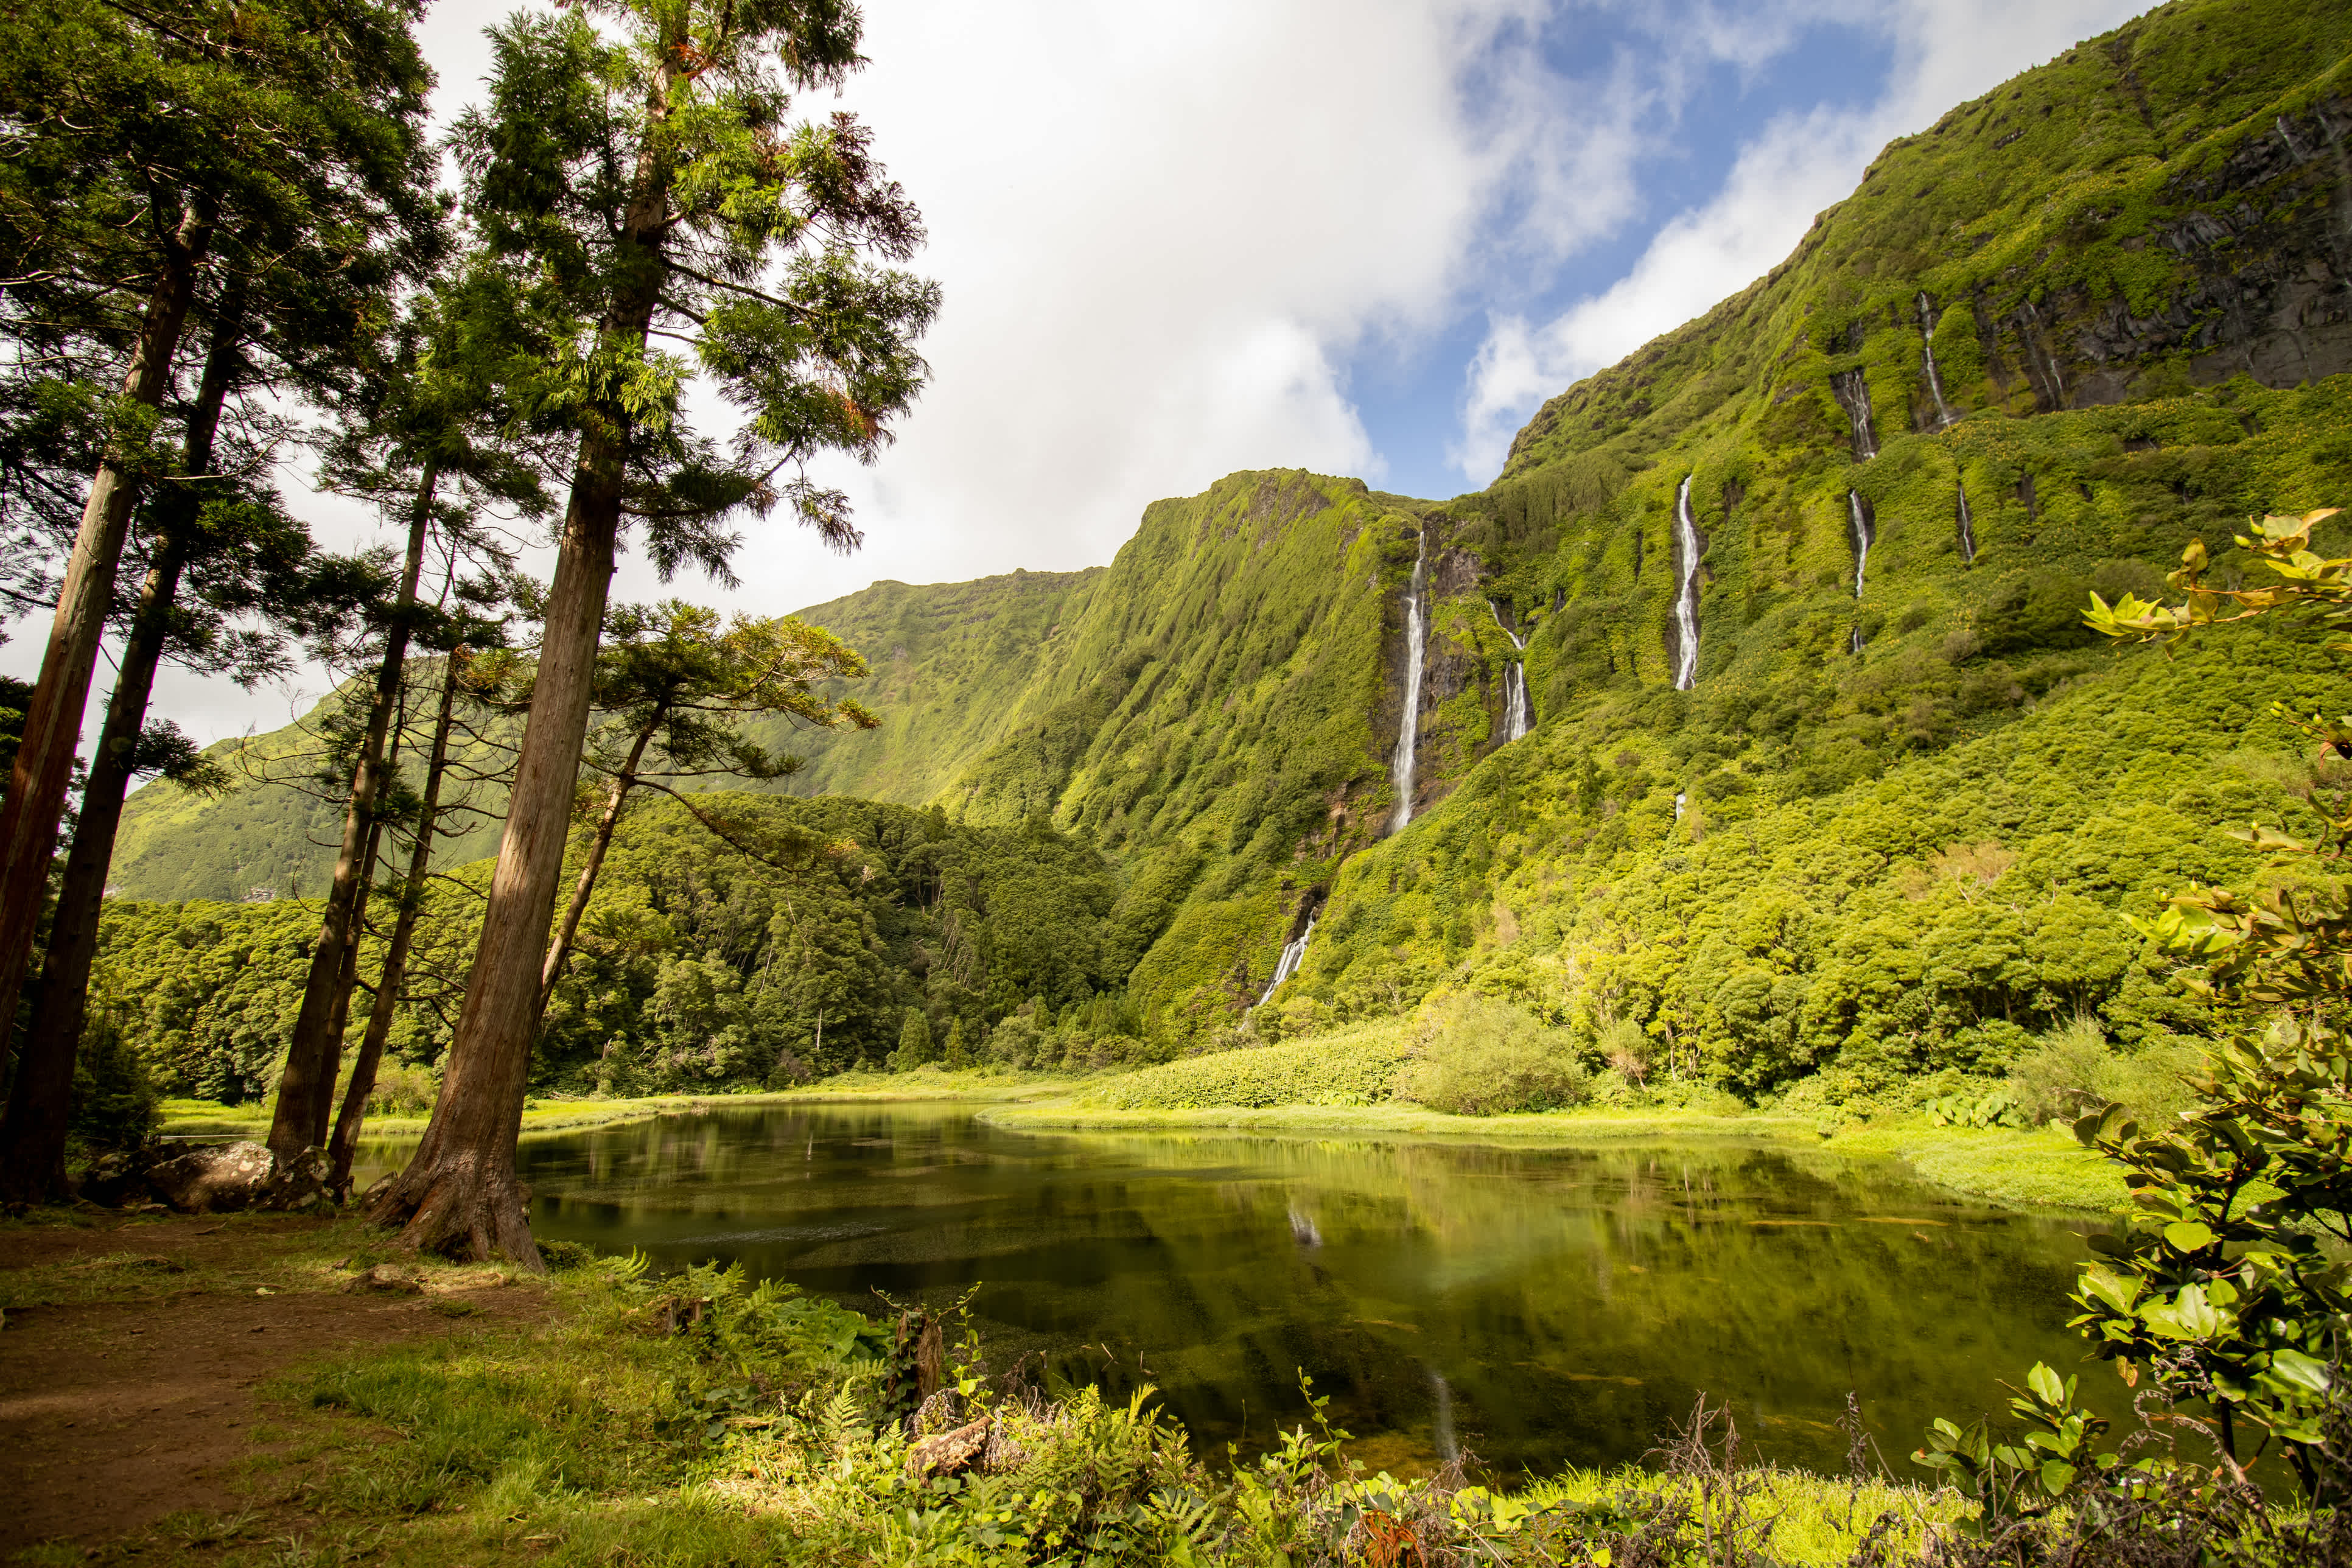 Erstaunliche Wasserfälle, See mit Reflexion, Wasser, grüne Landschaft, Azoreninseln. 